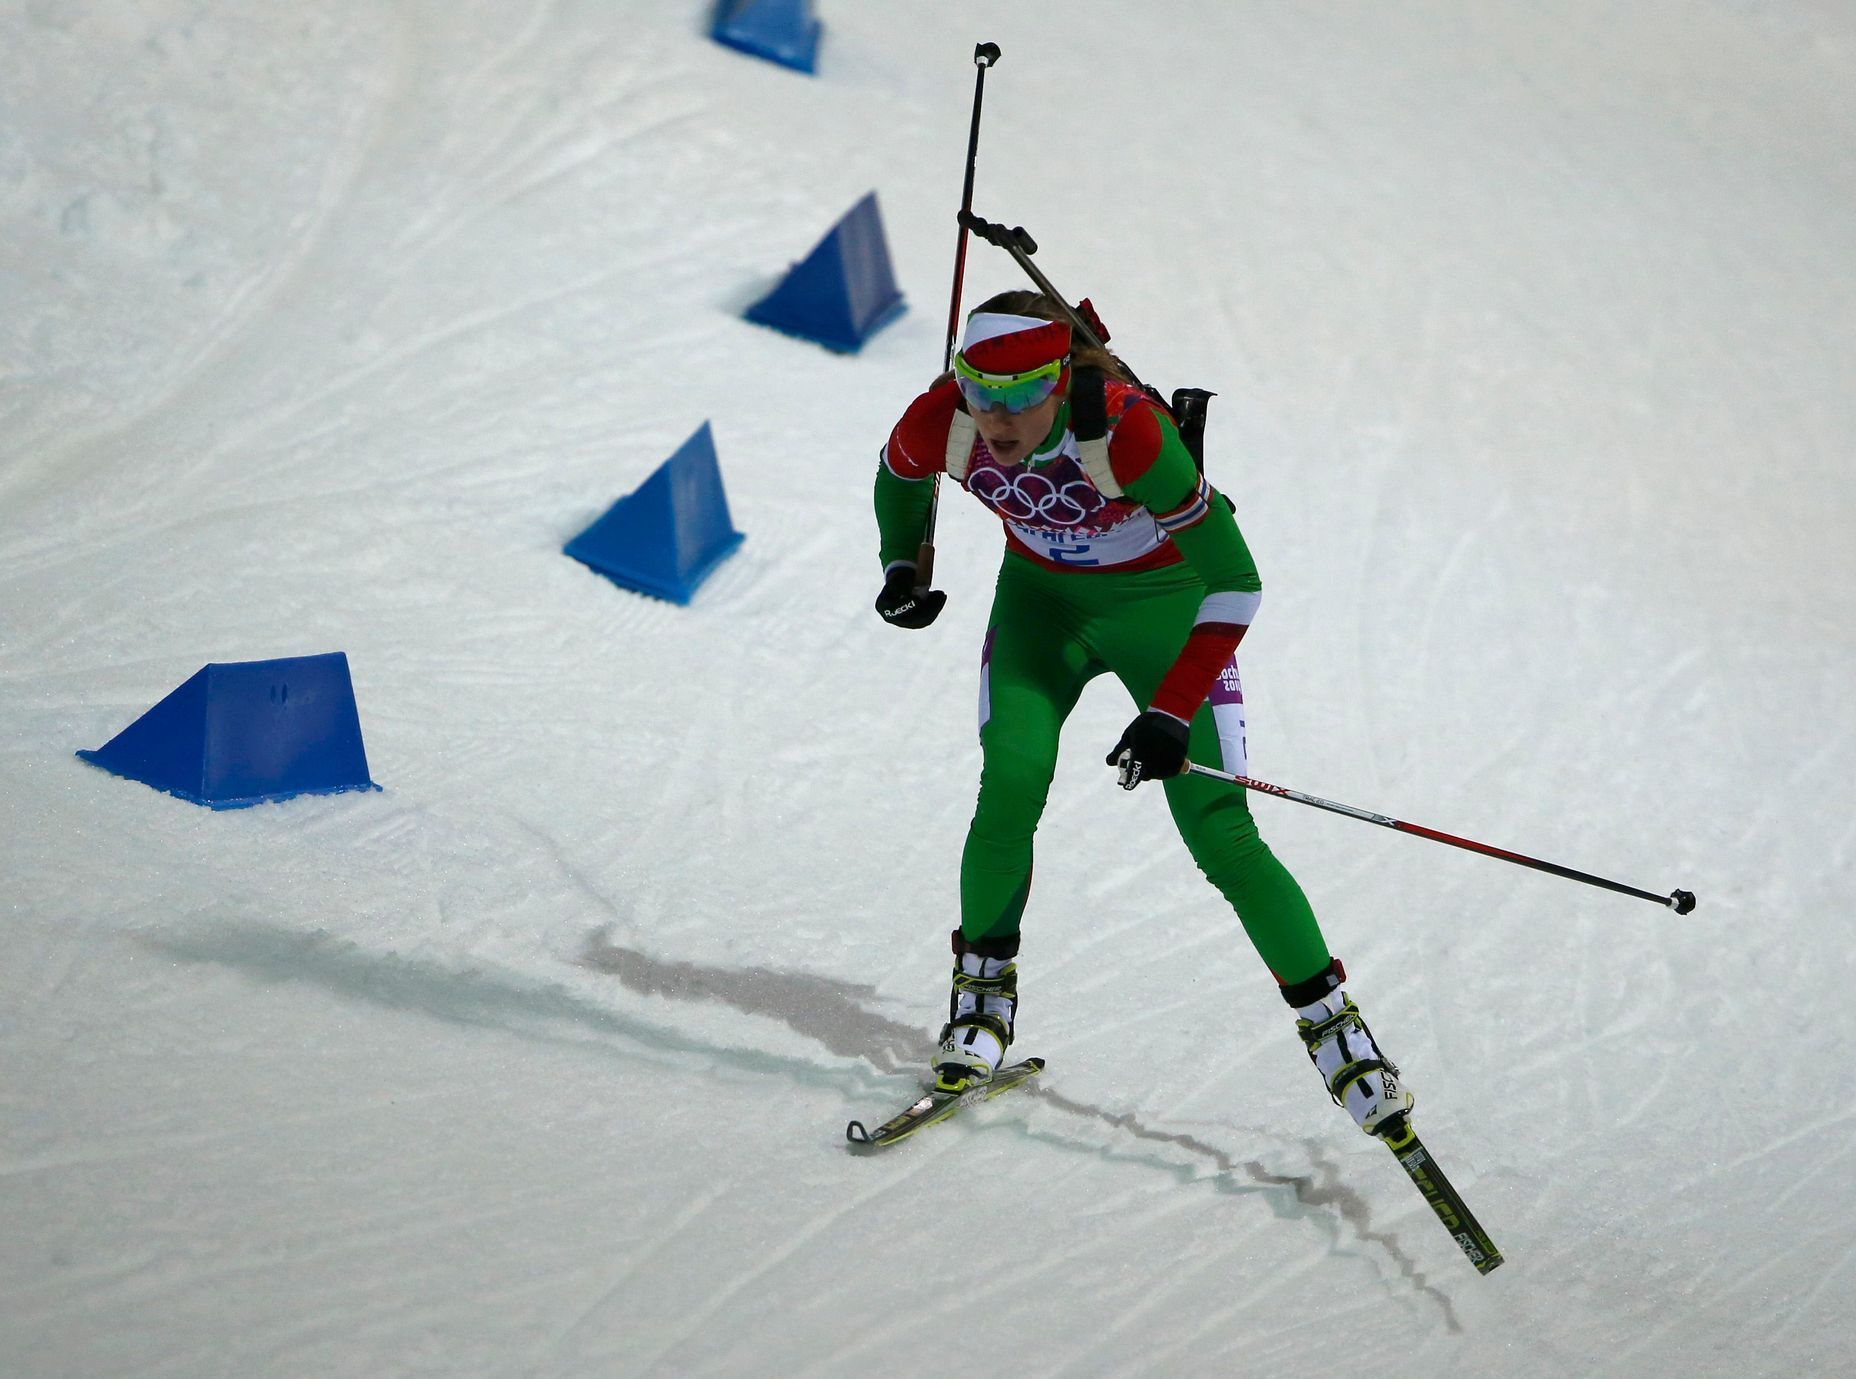 Soči 2014, biatlon hromadný start Ž: Darja Domračevová, Bělorusko